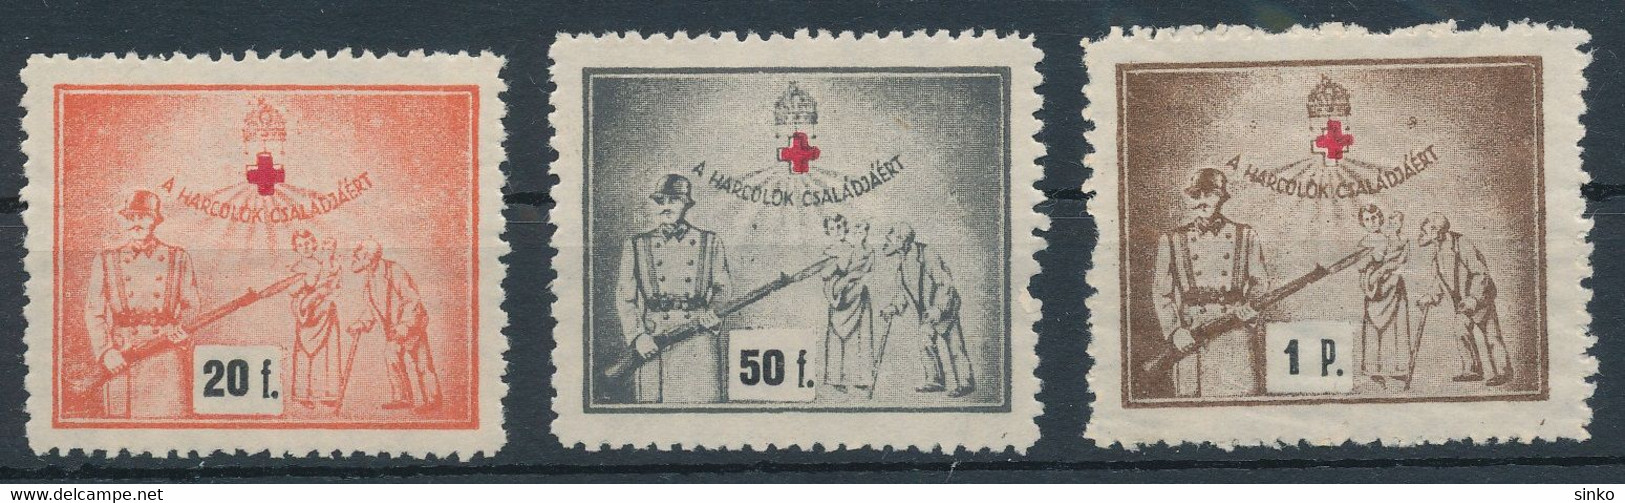 1940s Aid Stamps - Herdenkingsblaadjes